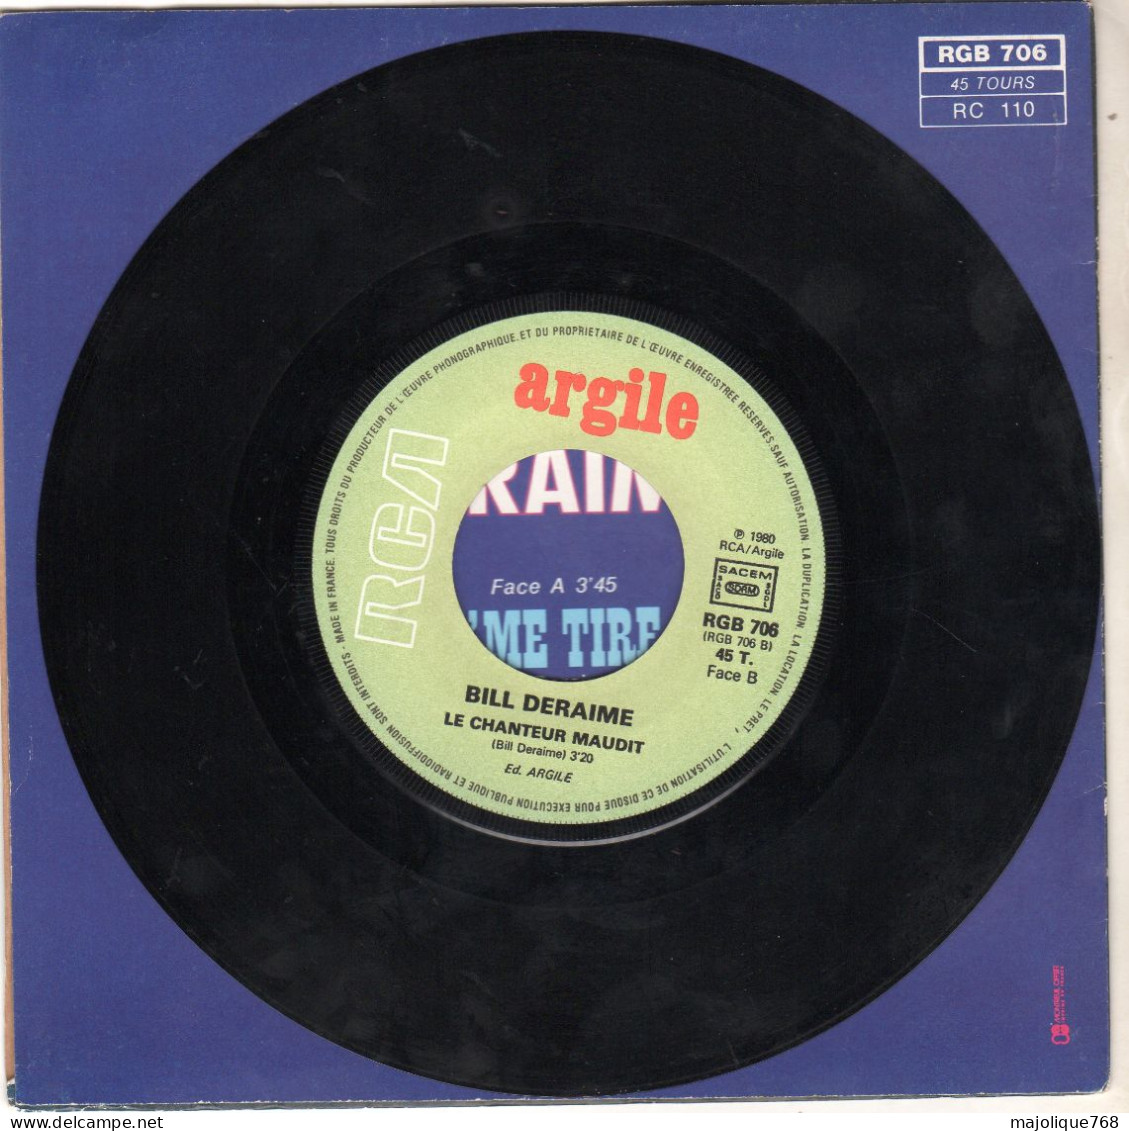 Disque 45T De Bill Deraime - Faut Que J'me Tire Ailleurs - Arglie - RCA - RGB 706 - France 1980 - Blues